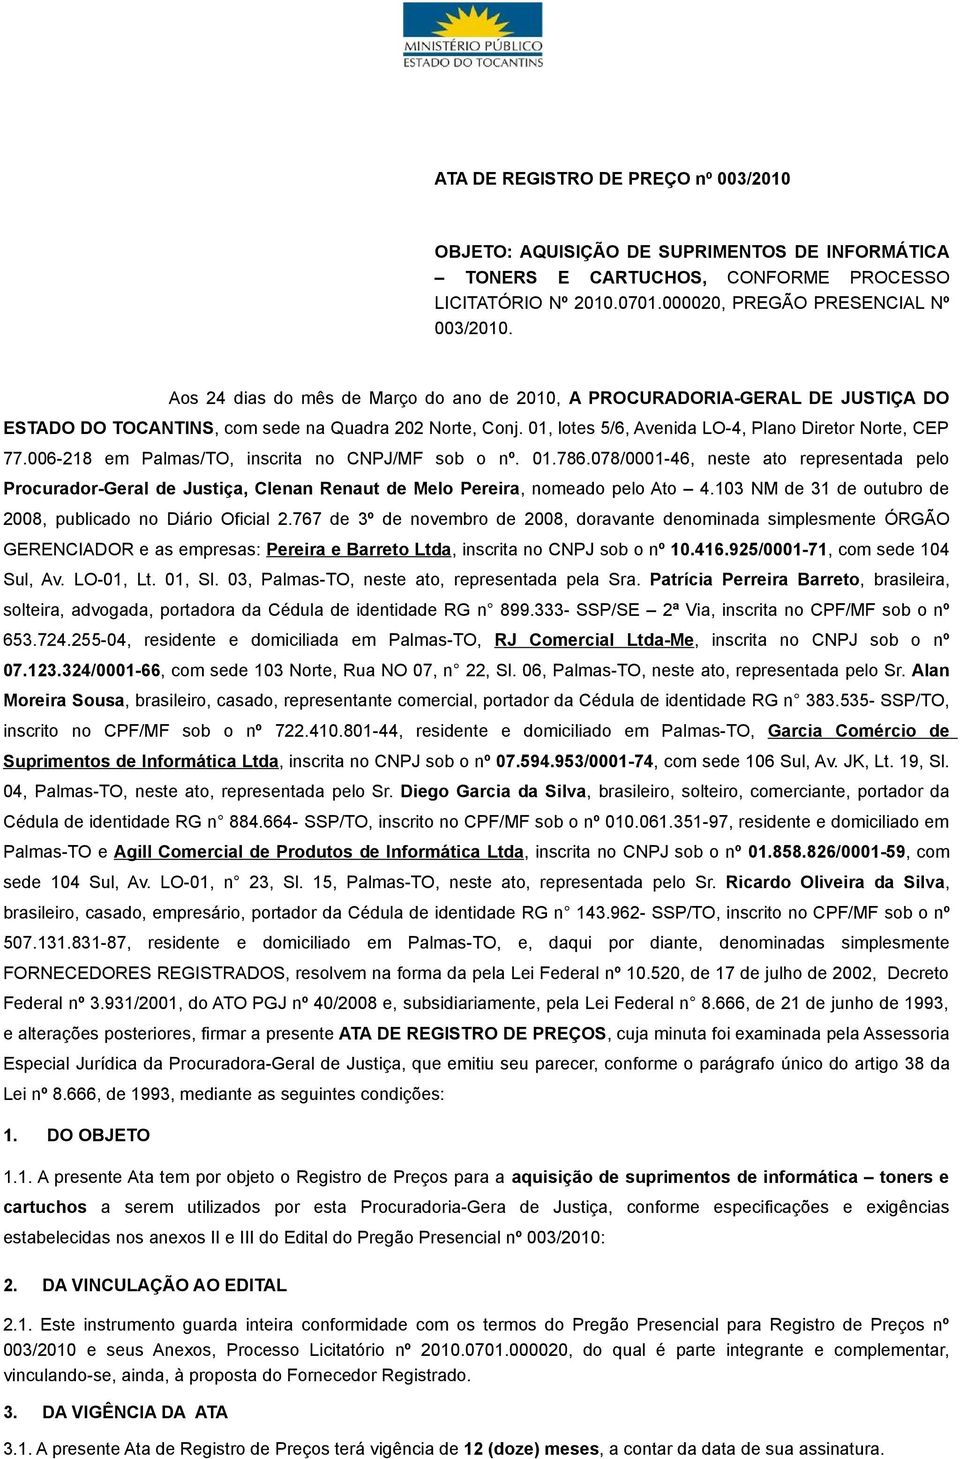 006-218 em Palmas/TO, inscrita no CNPJ/MF sob o nº. 01.786.078/0001-46, neste ato representada pelo Procurador-Geral de Justiça, Clenan Renaut de Melo Pereira, nomeado pelo Ato 4.